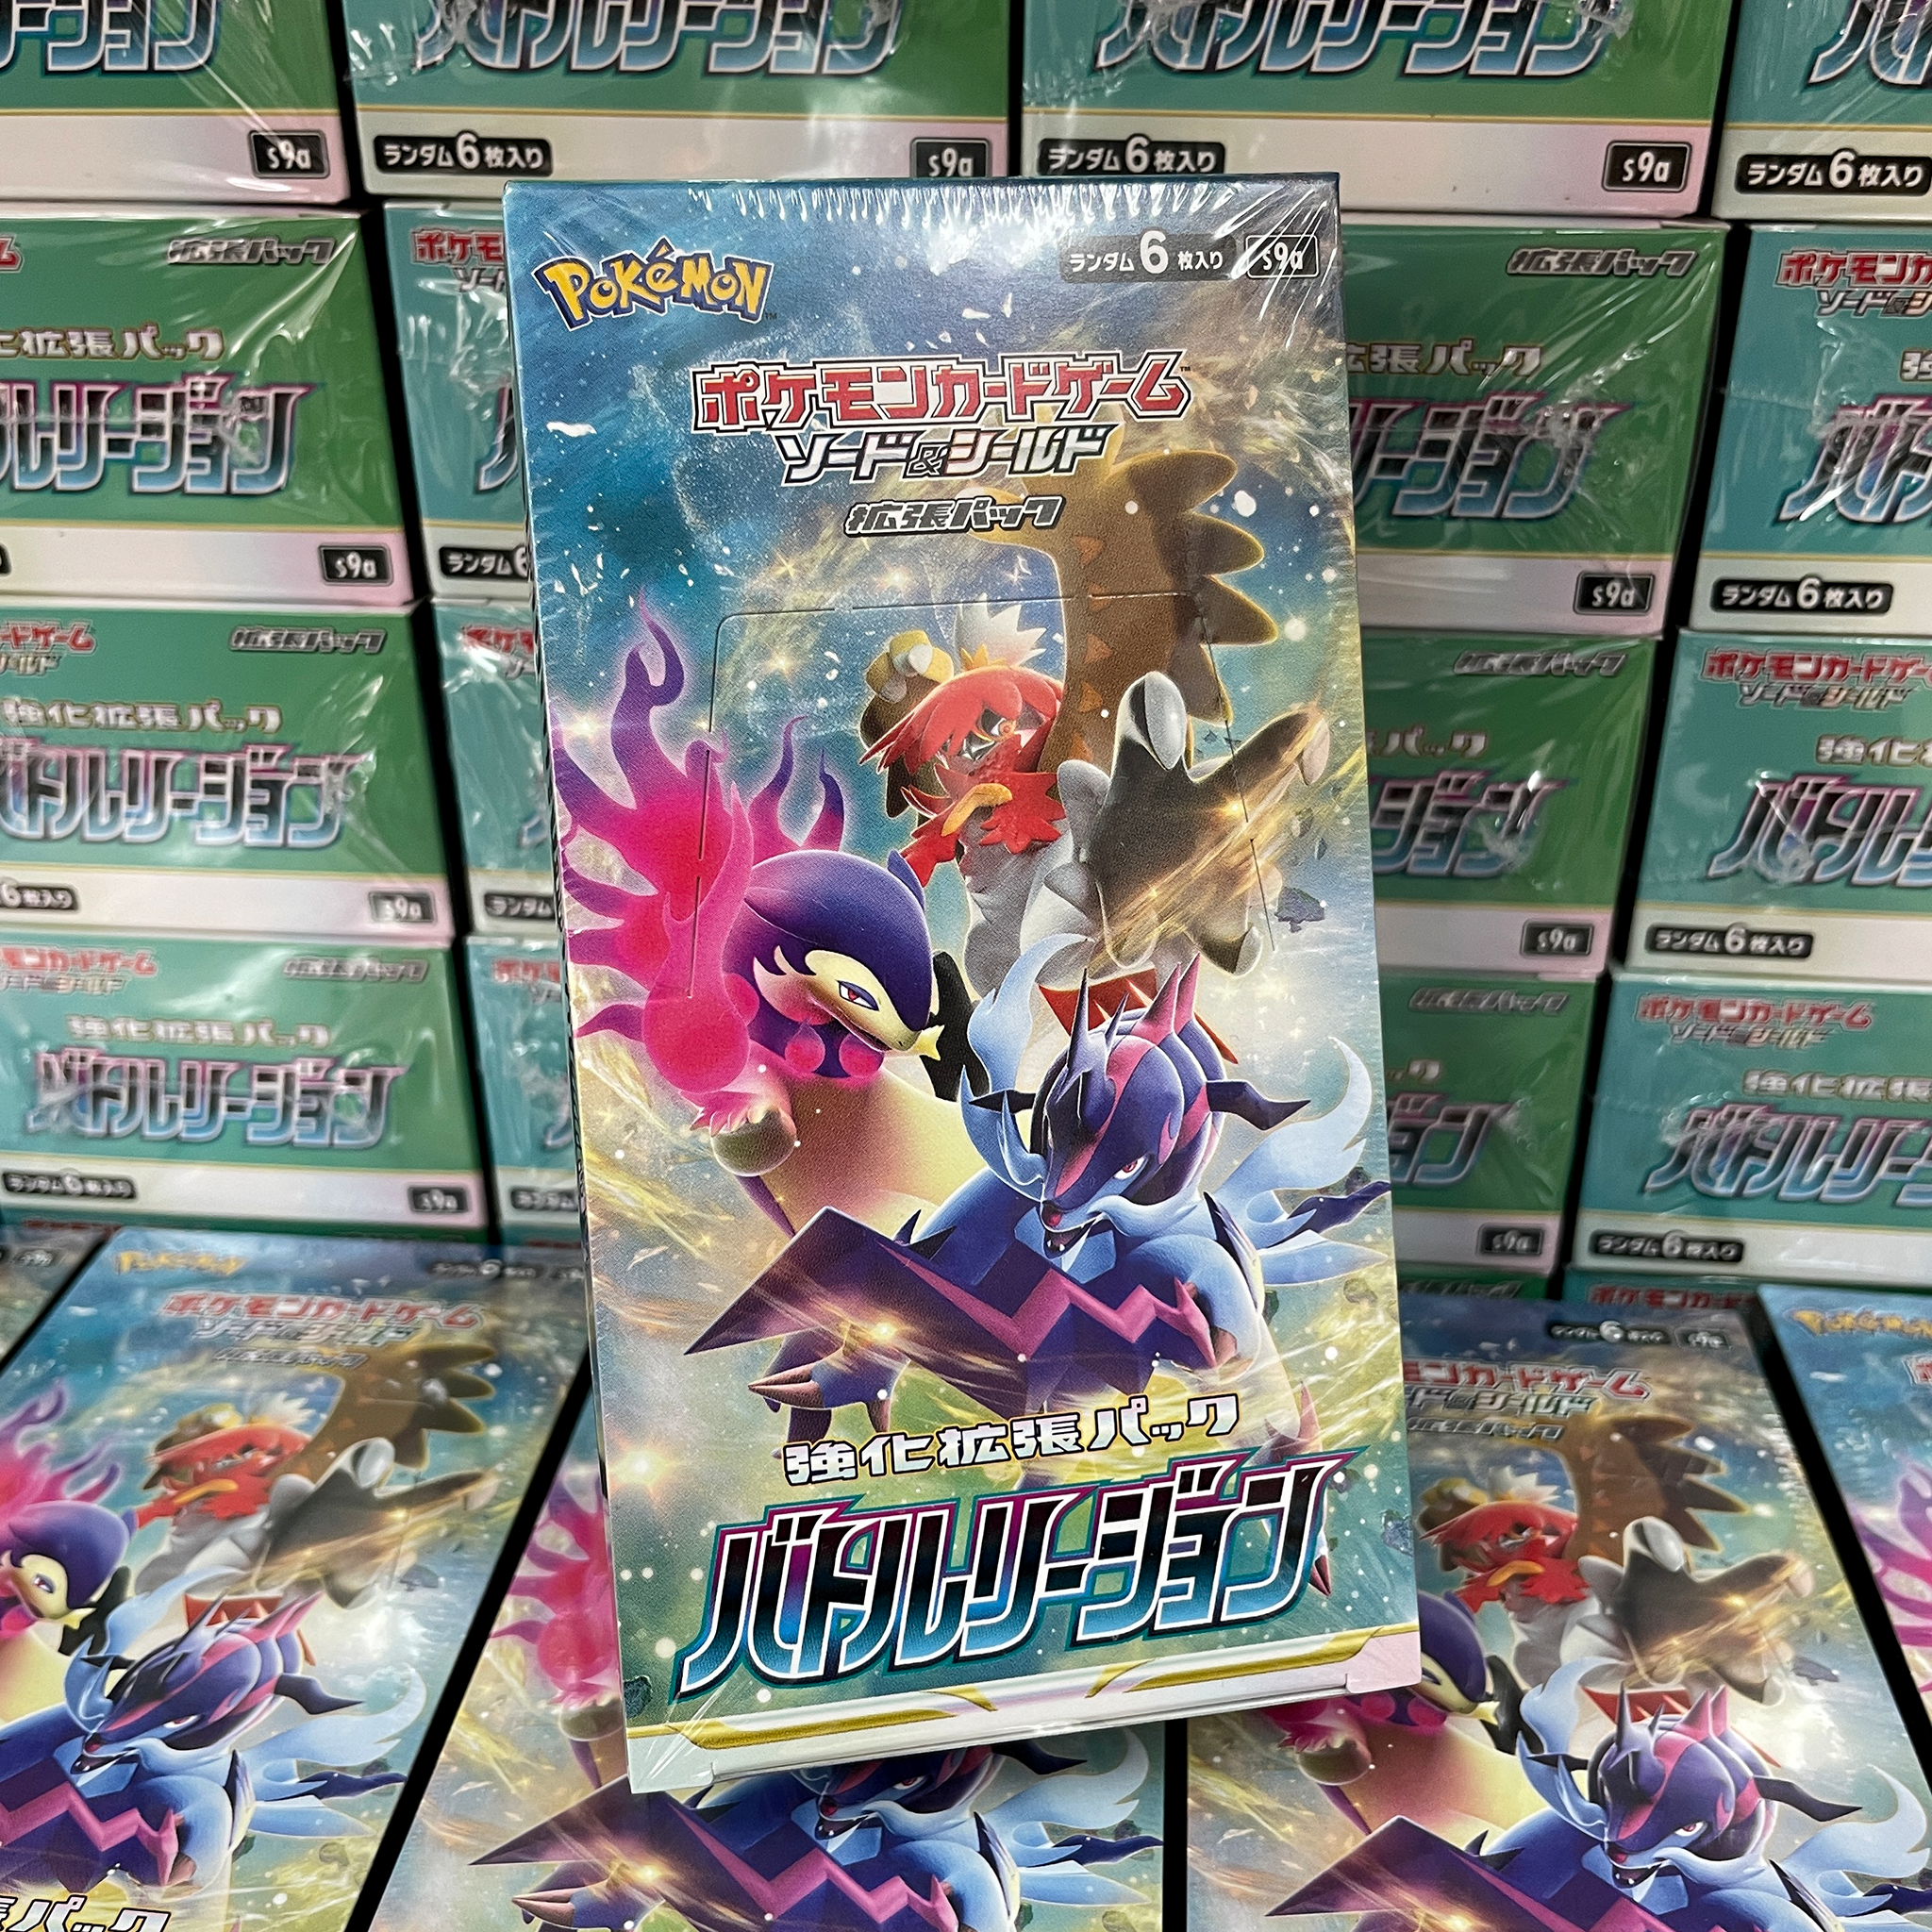 [S9a] POKÉMON CARD GAME Sword & Shield Expansion pack ｢Battle Region｣ Box Cartes display Pokémon japonaise